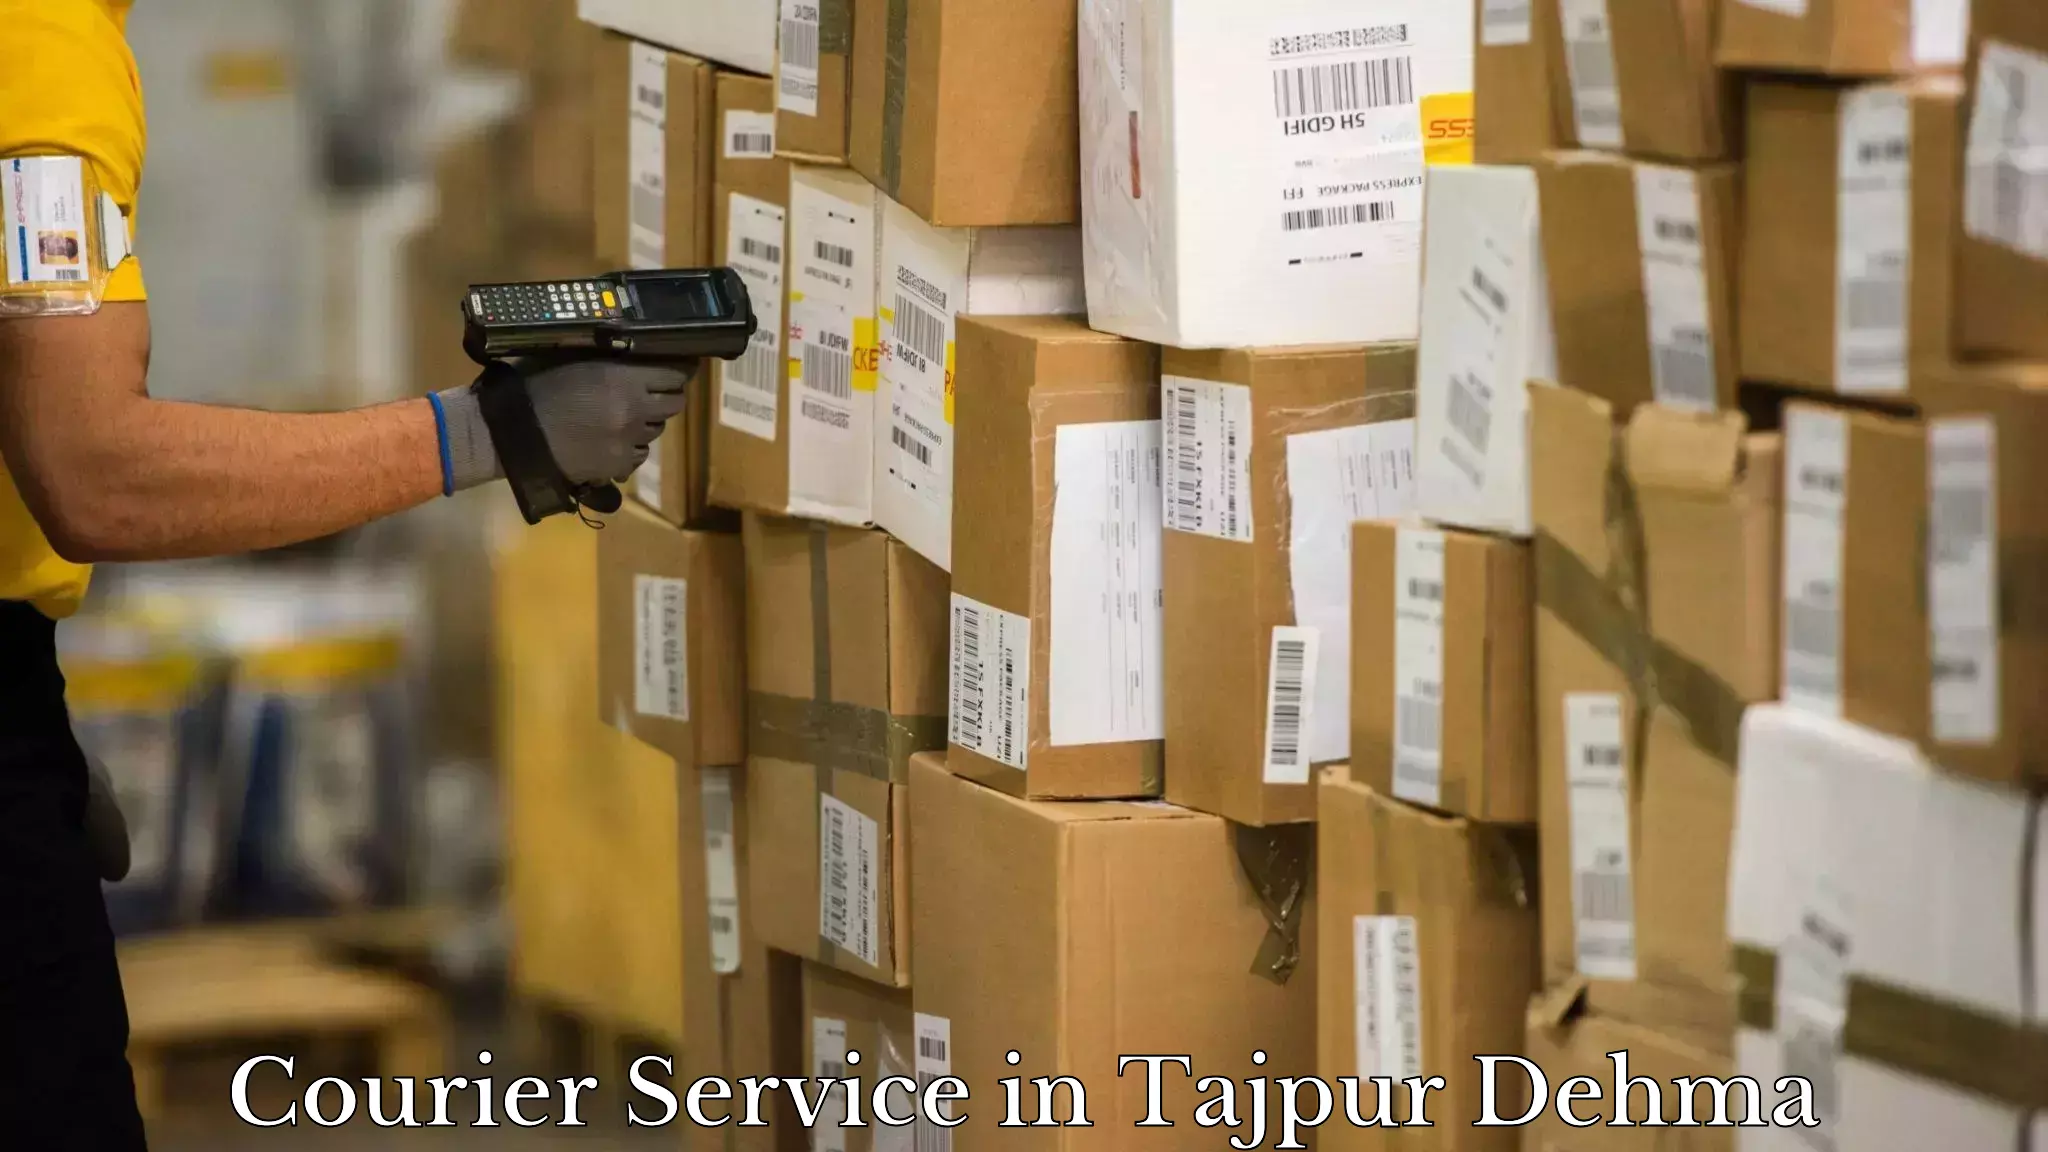 Express logistics service in Tajpur Dehma